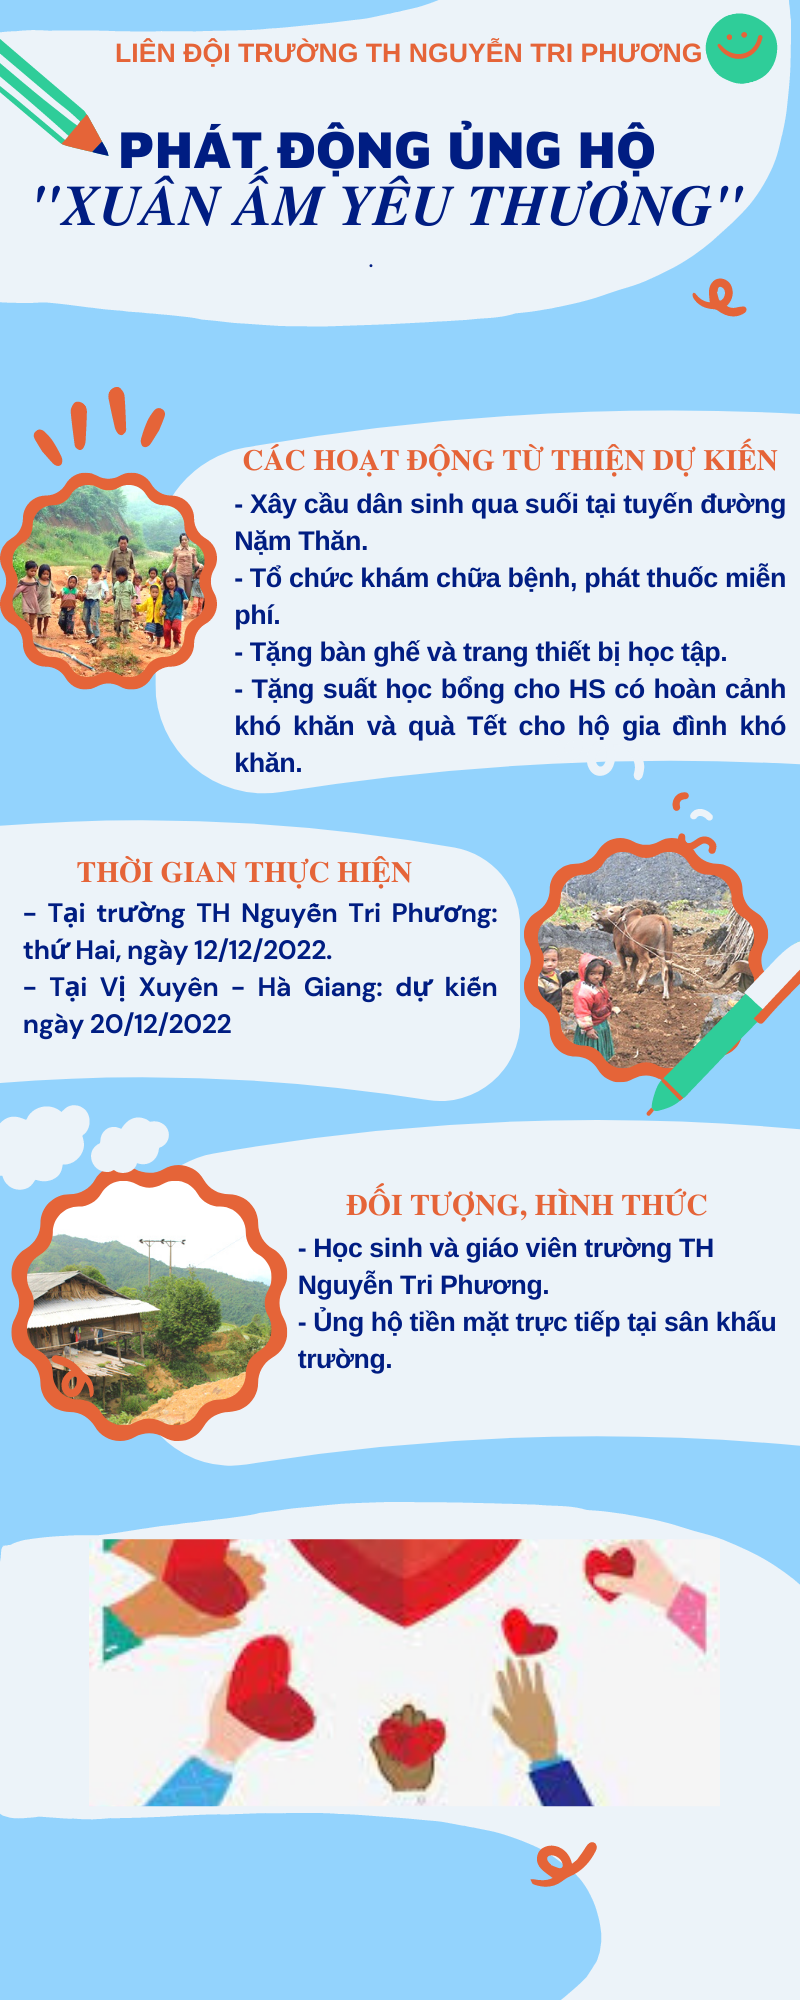 Phát động chương trình ủng hộ “Xuân ấm yêu thương” năm 2023 tới nhân dân huyện Vị Xuyên, tỉnh Hà Giang